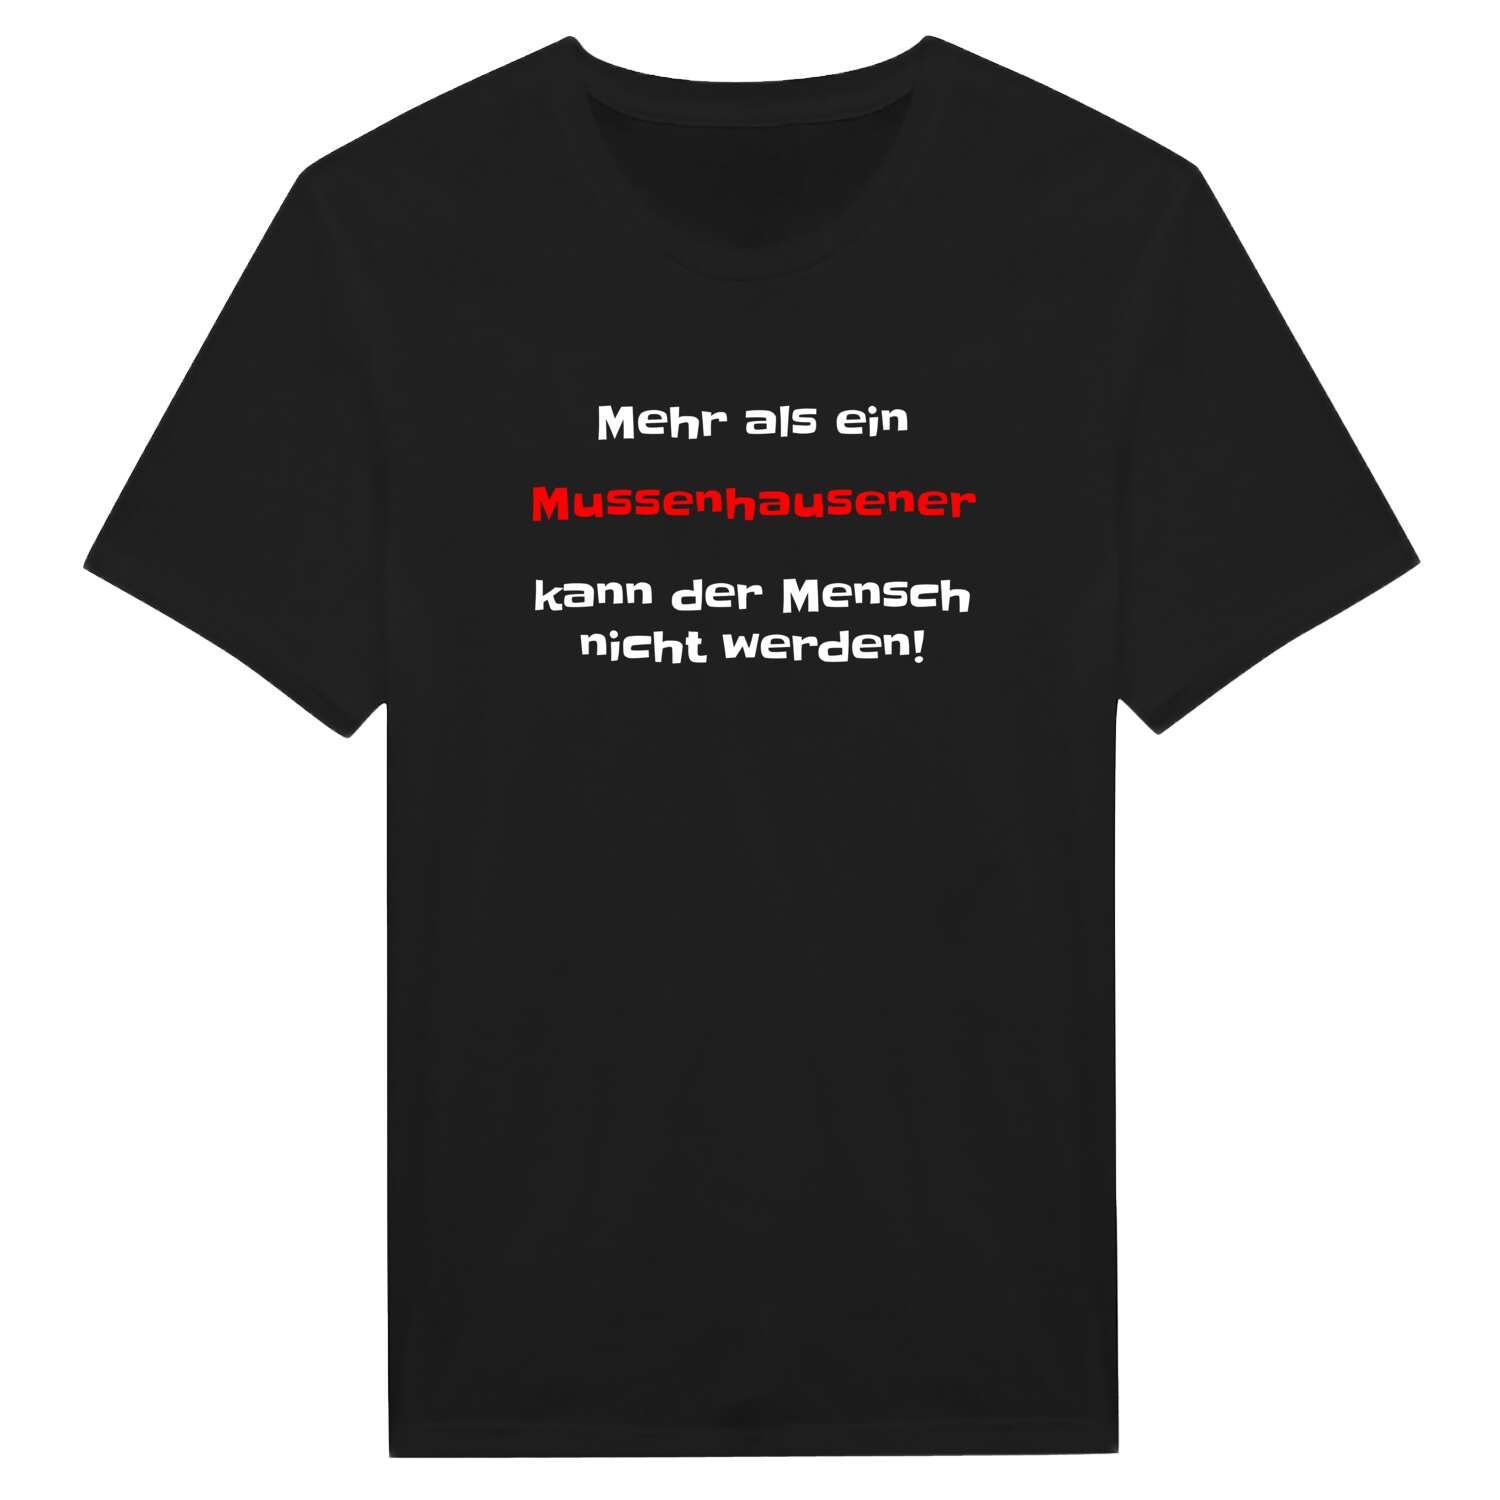 Mussenhausen T-Shirt »Mehr als ein«